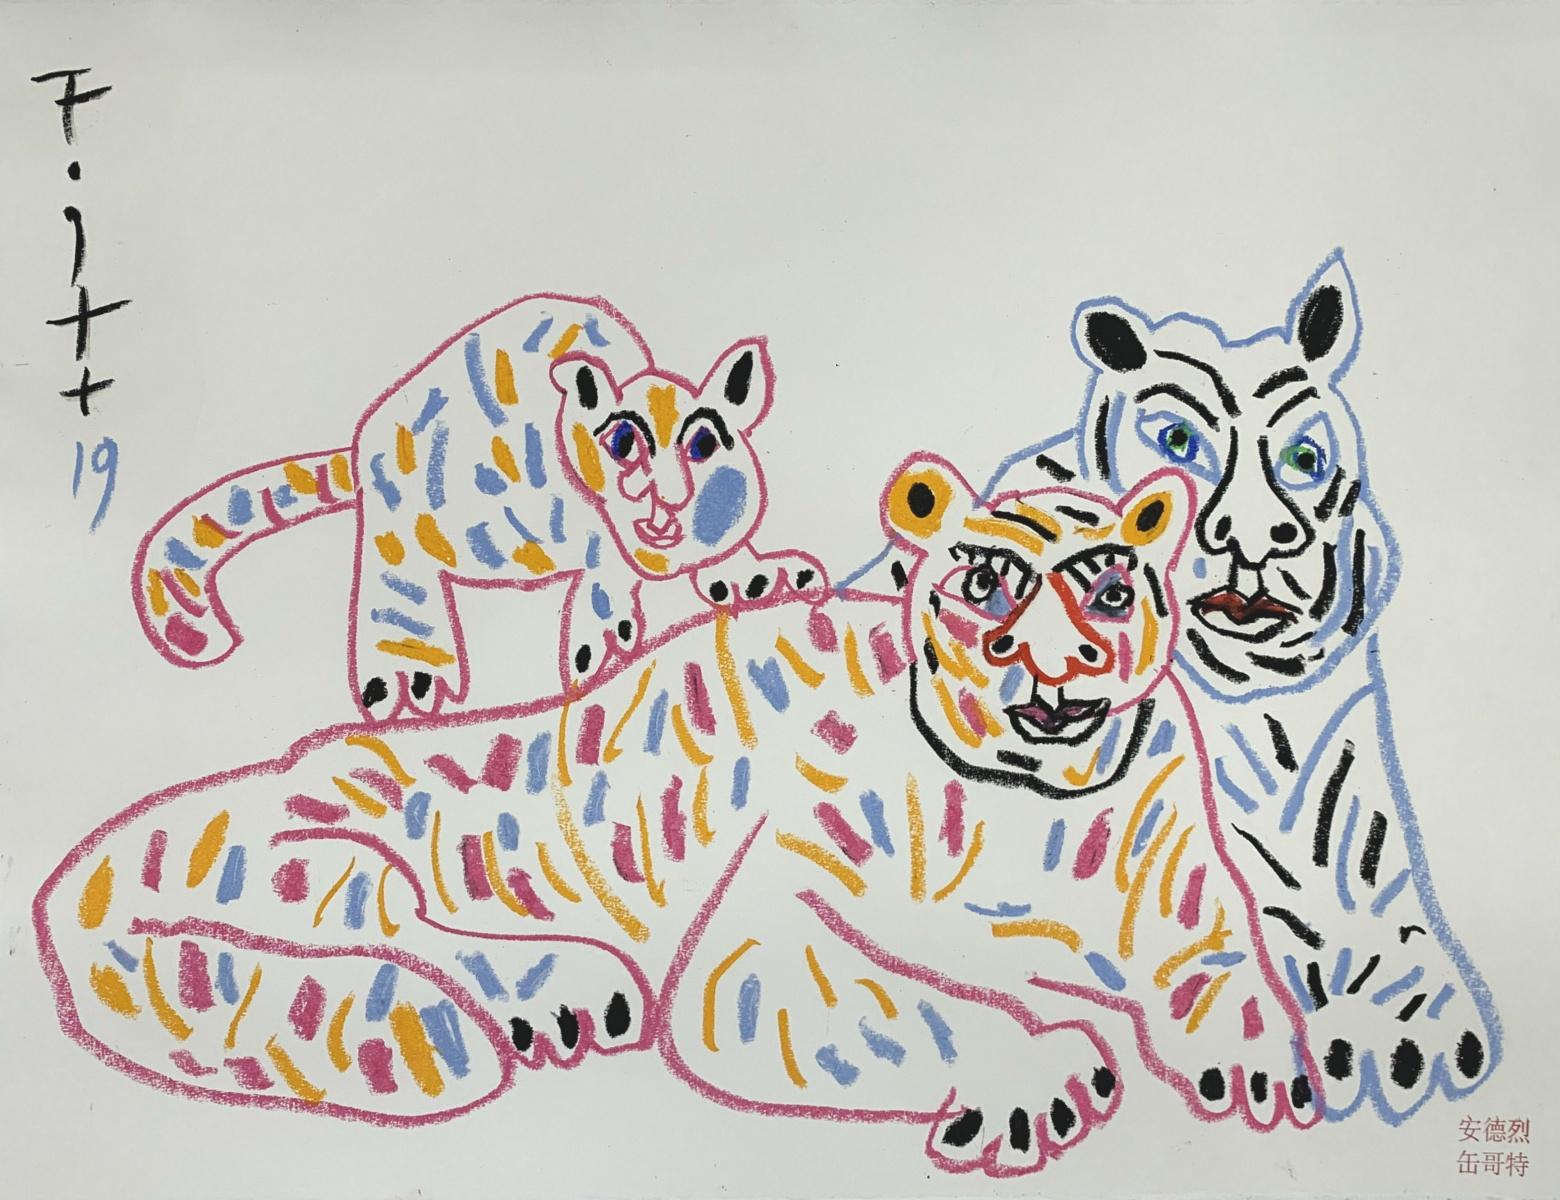 Tiger mit Sohn - Polnischer Kunstmeister, Pastellfarben, Tiere, chinesisches Tierkreiszeichen